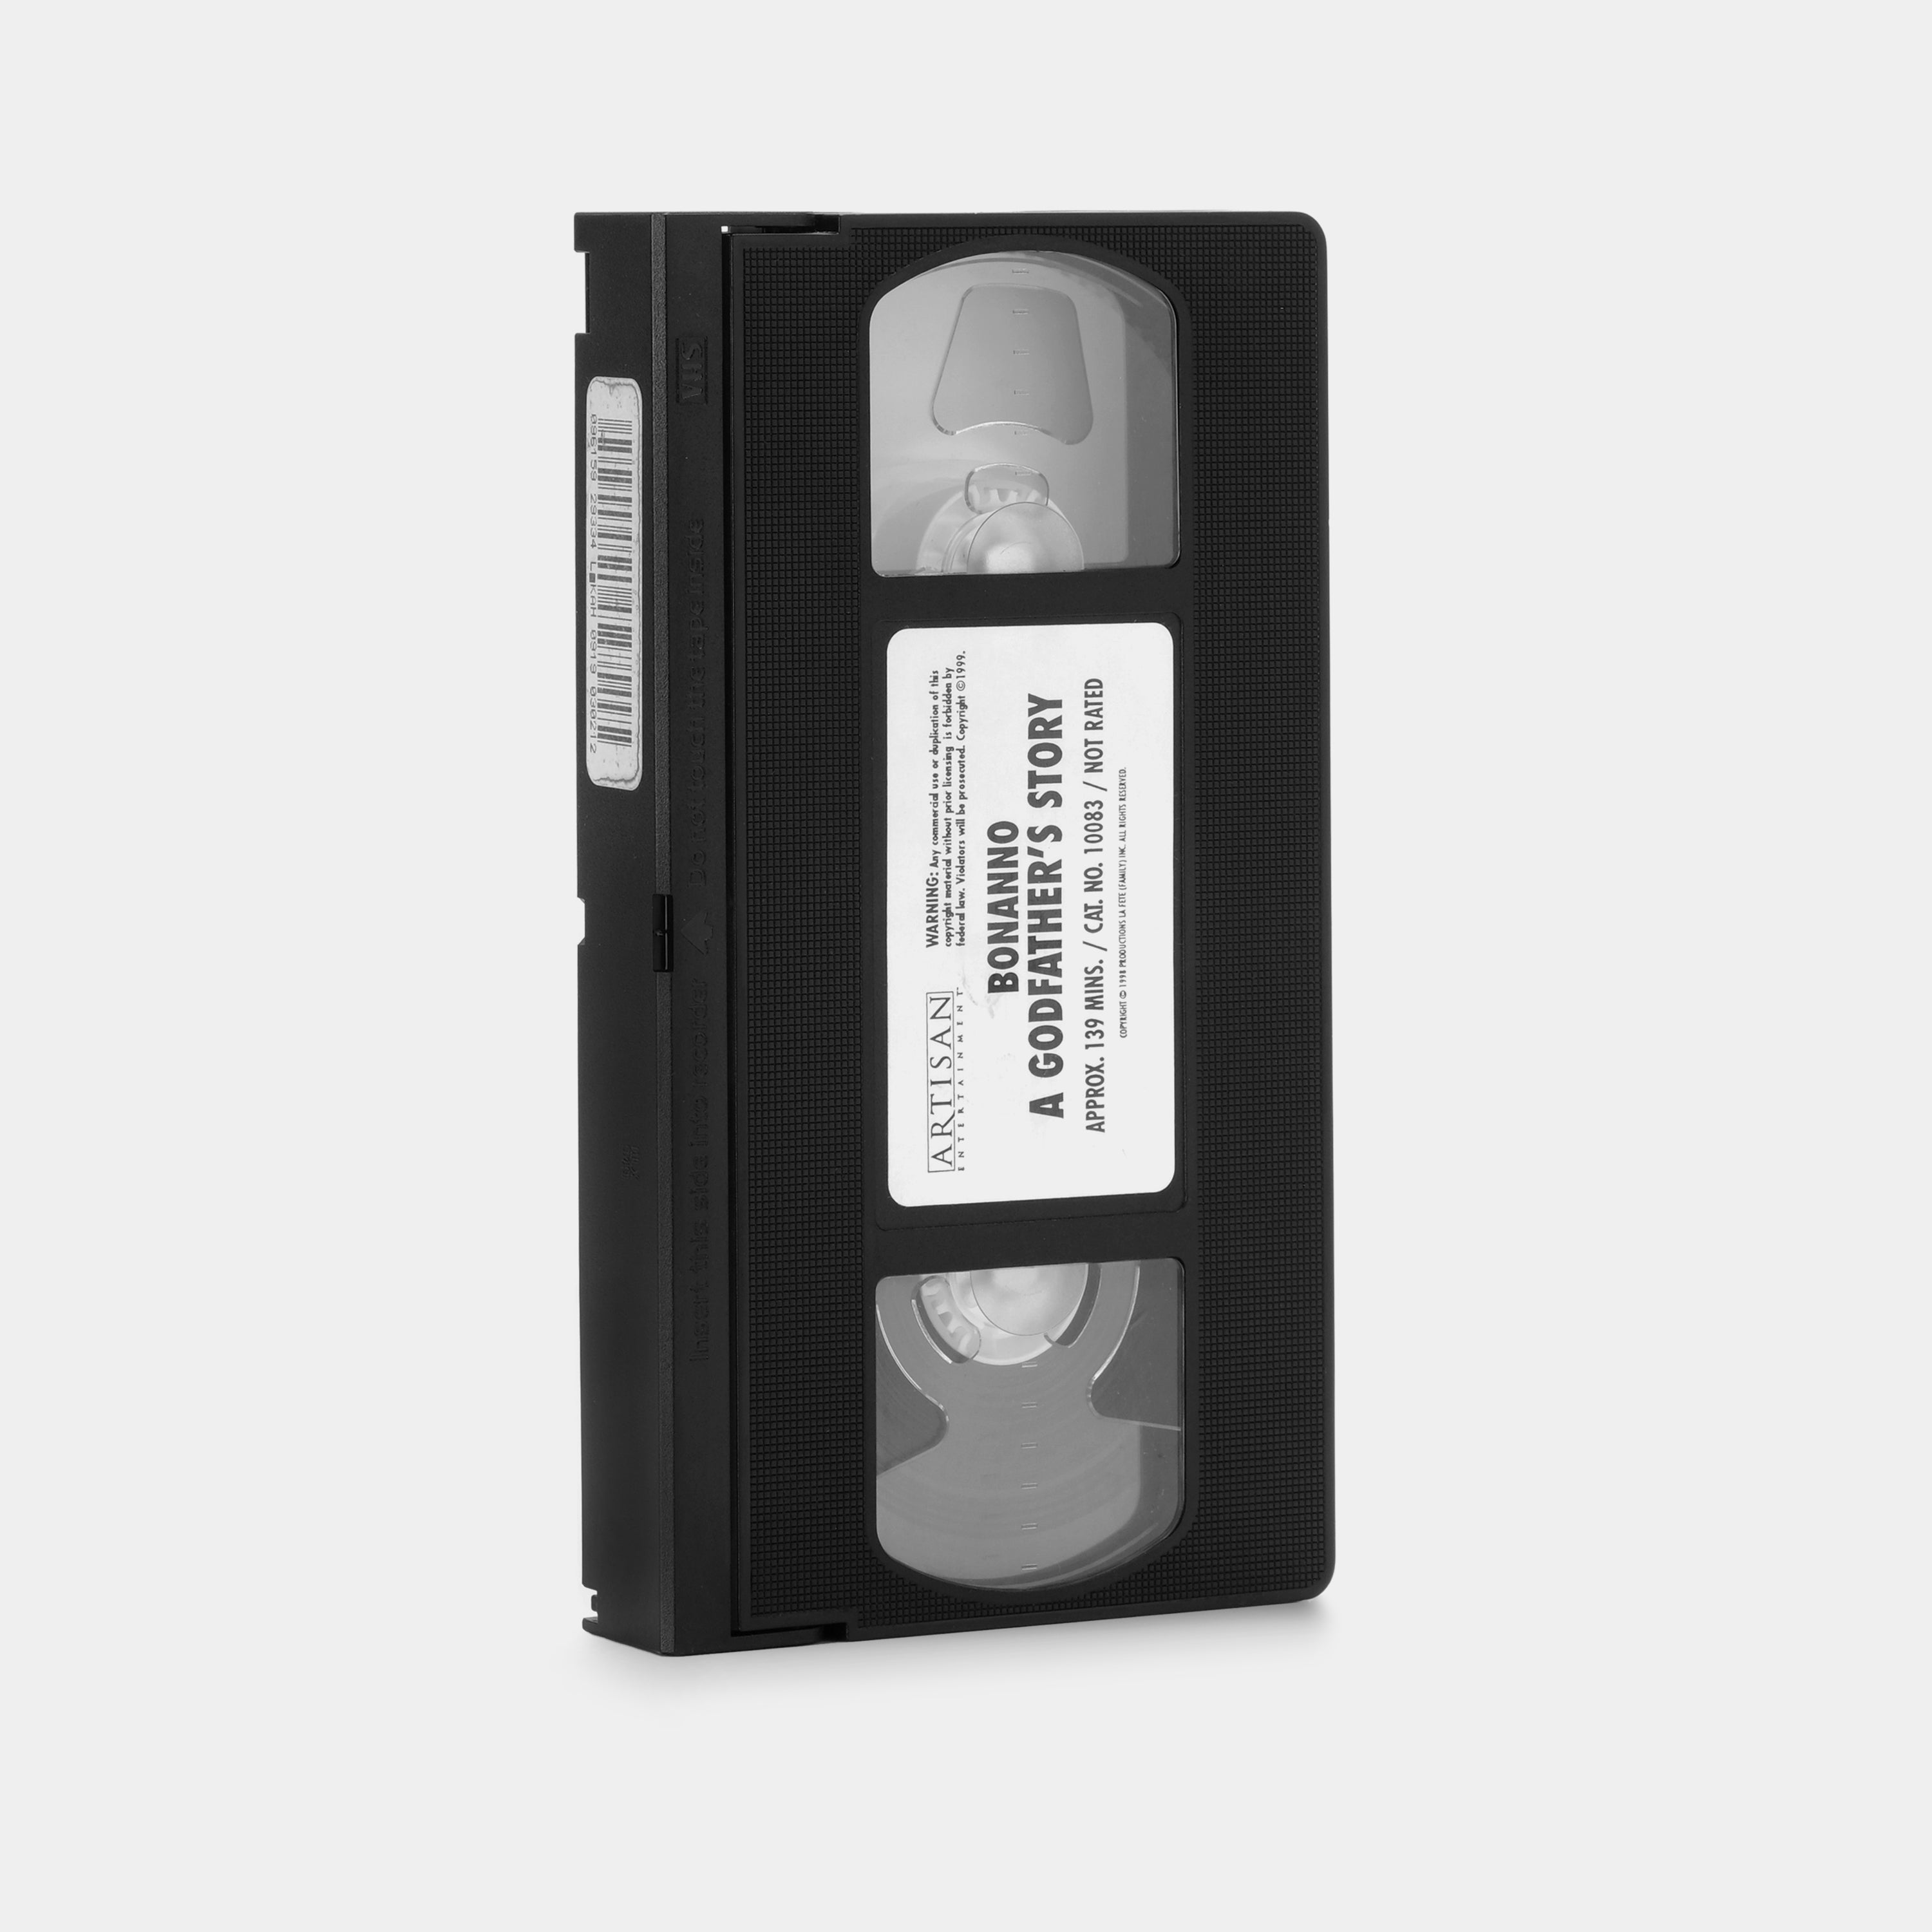 Bonanno: A Godfather's Story VHS Tape